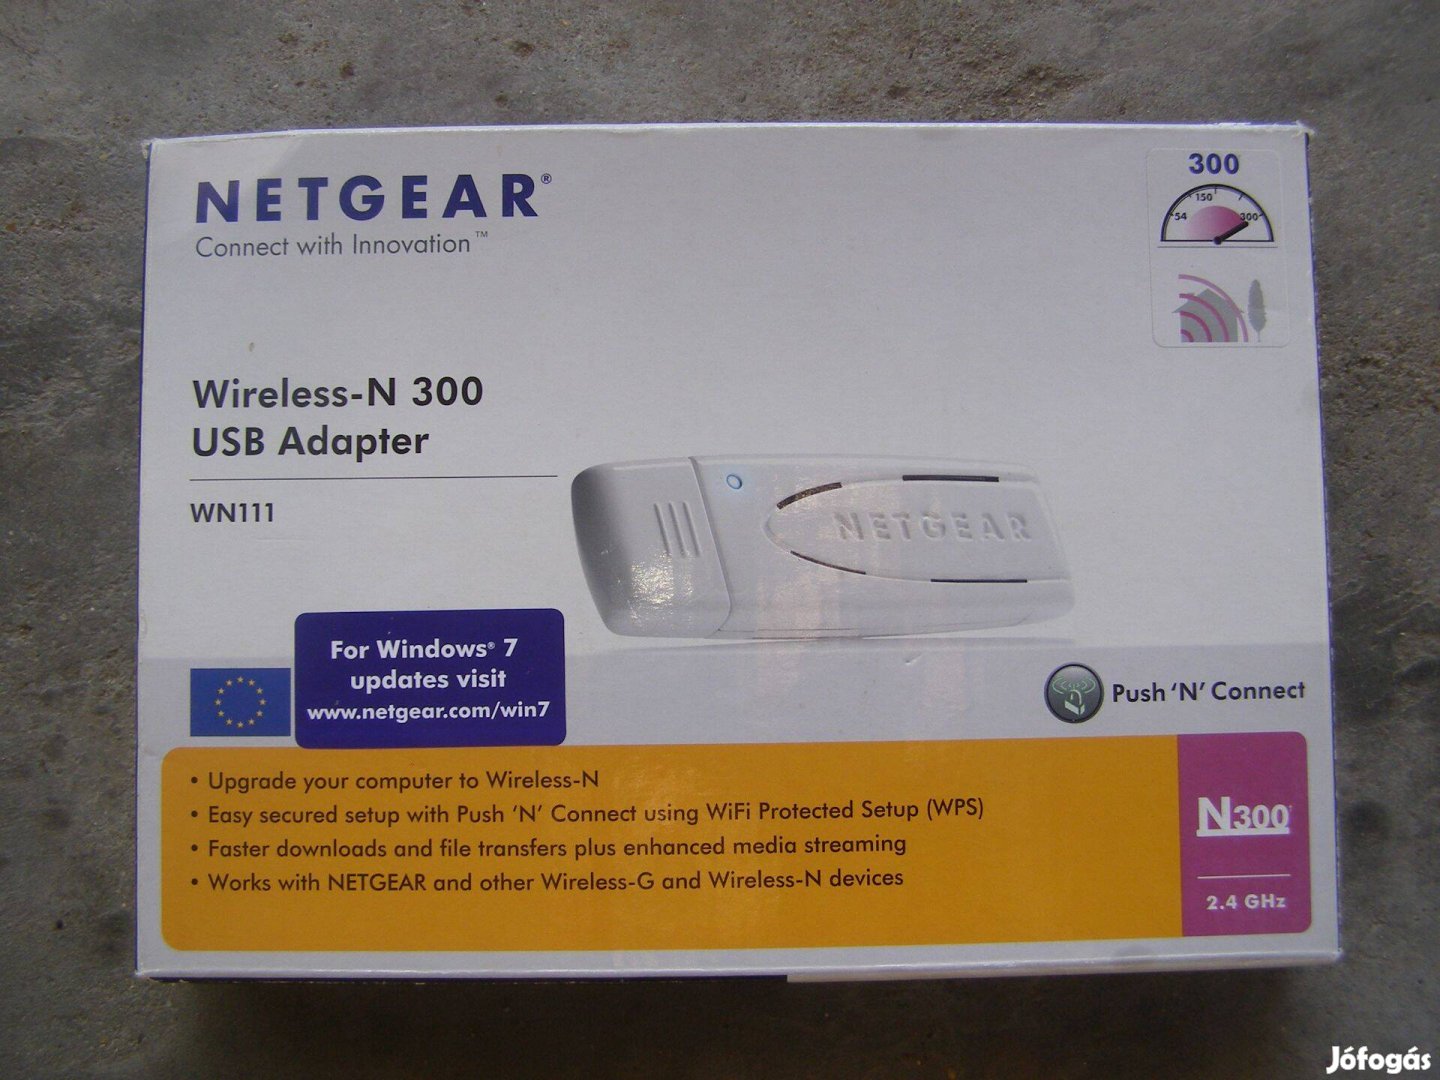 Netgear Wireless-N300 USB Adapter